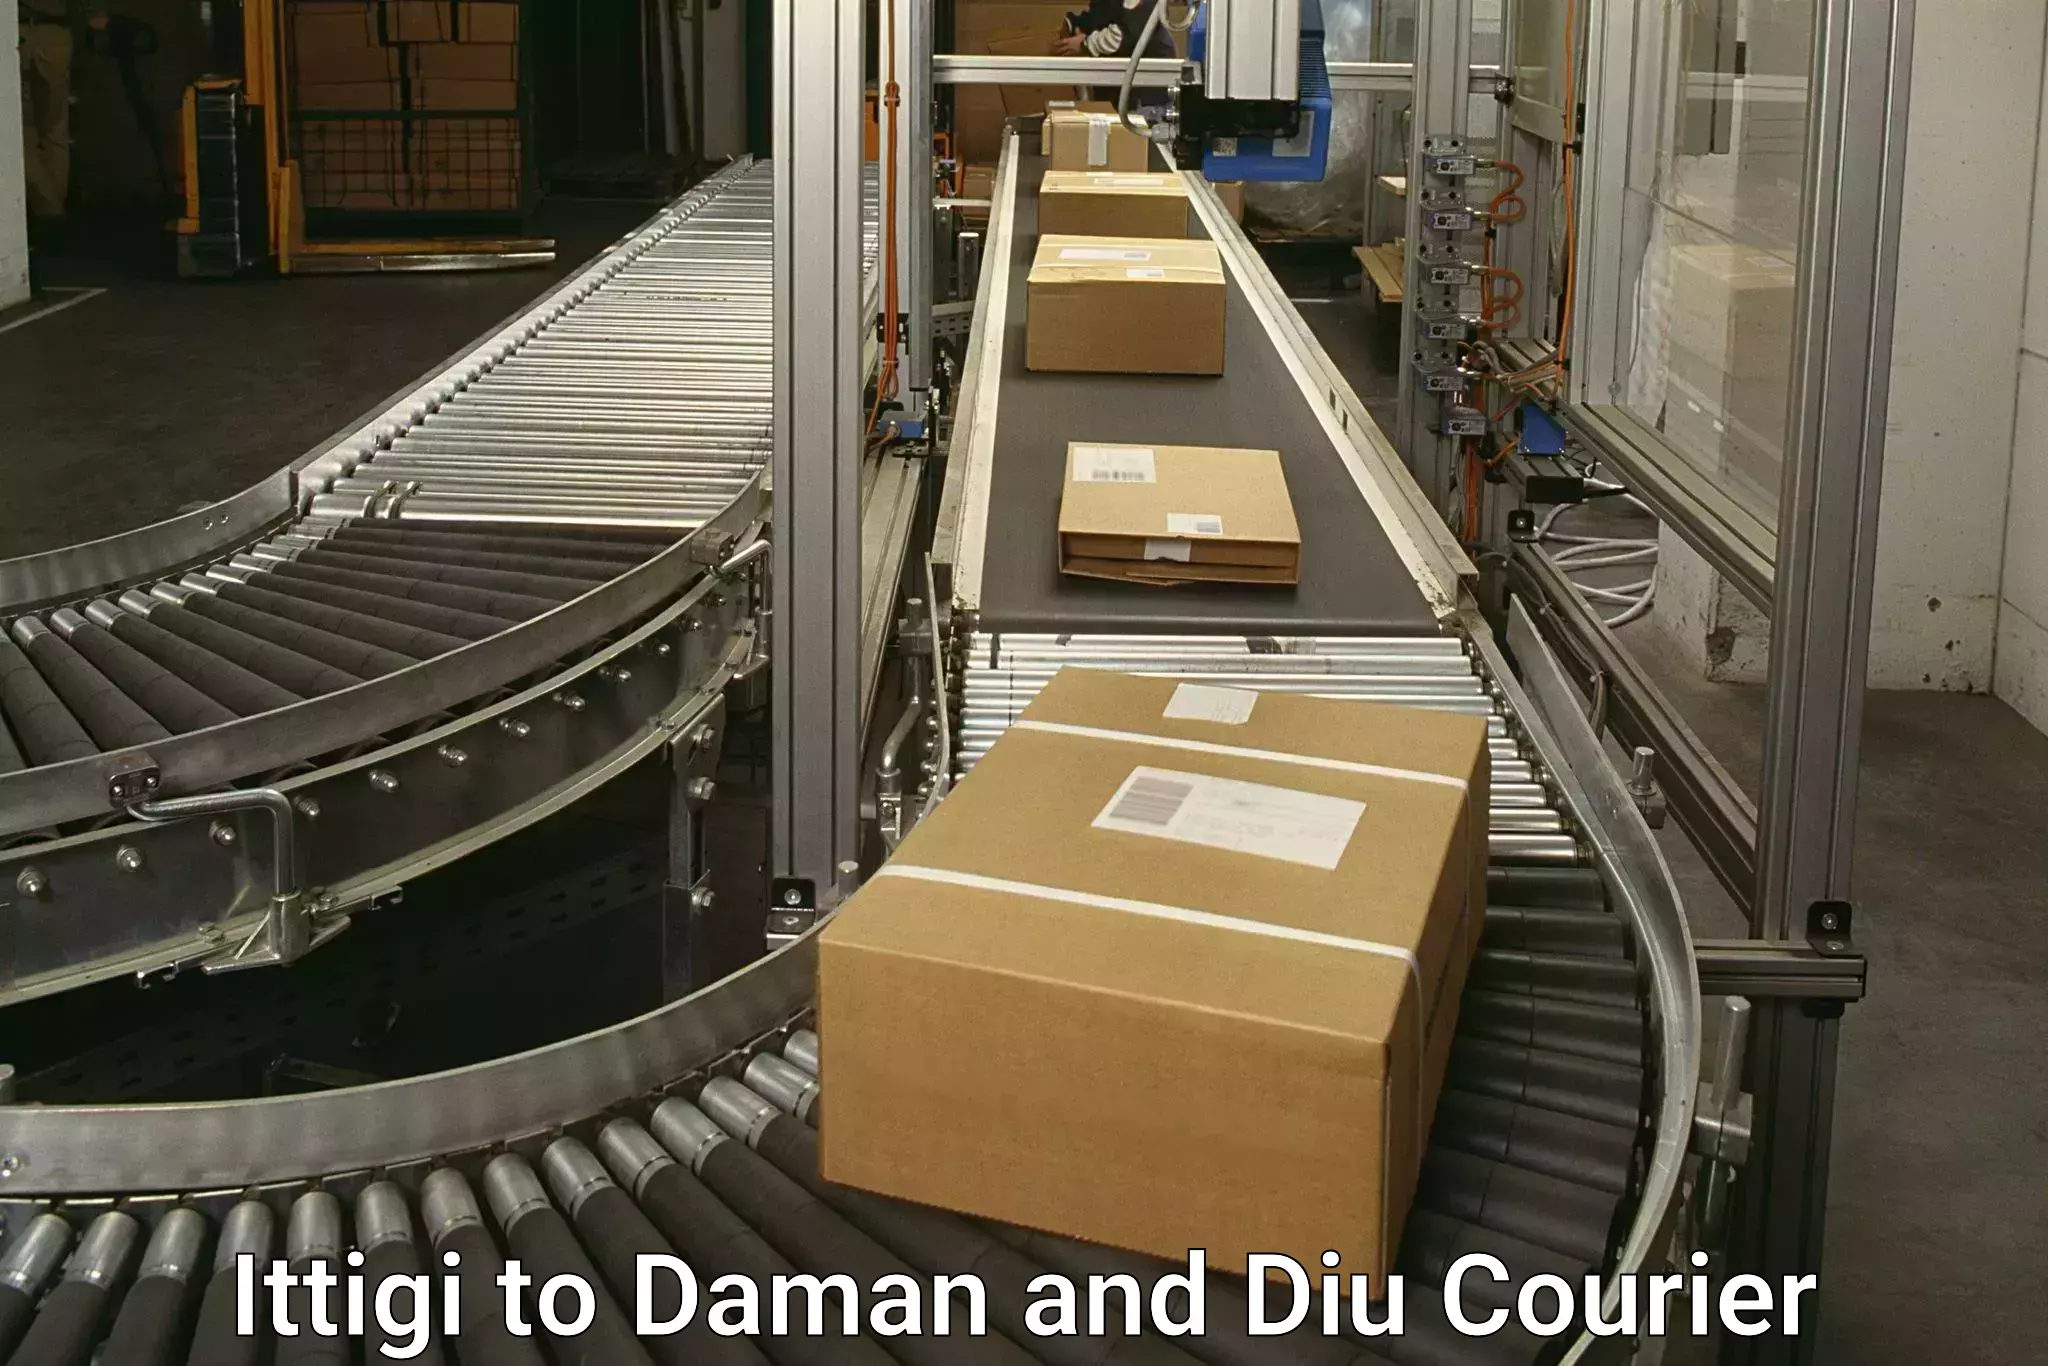 Customized shipping options Ittigi to Diu